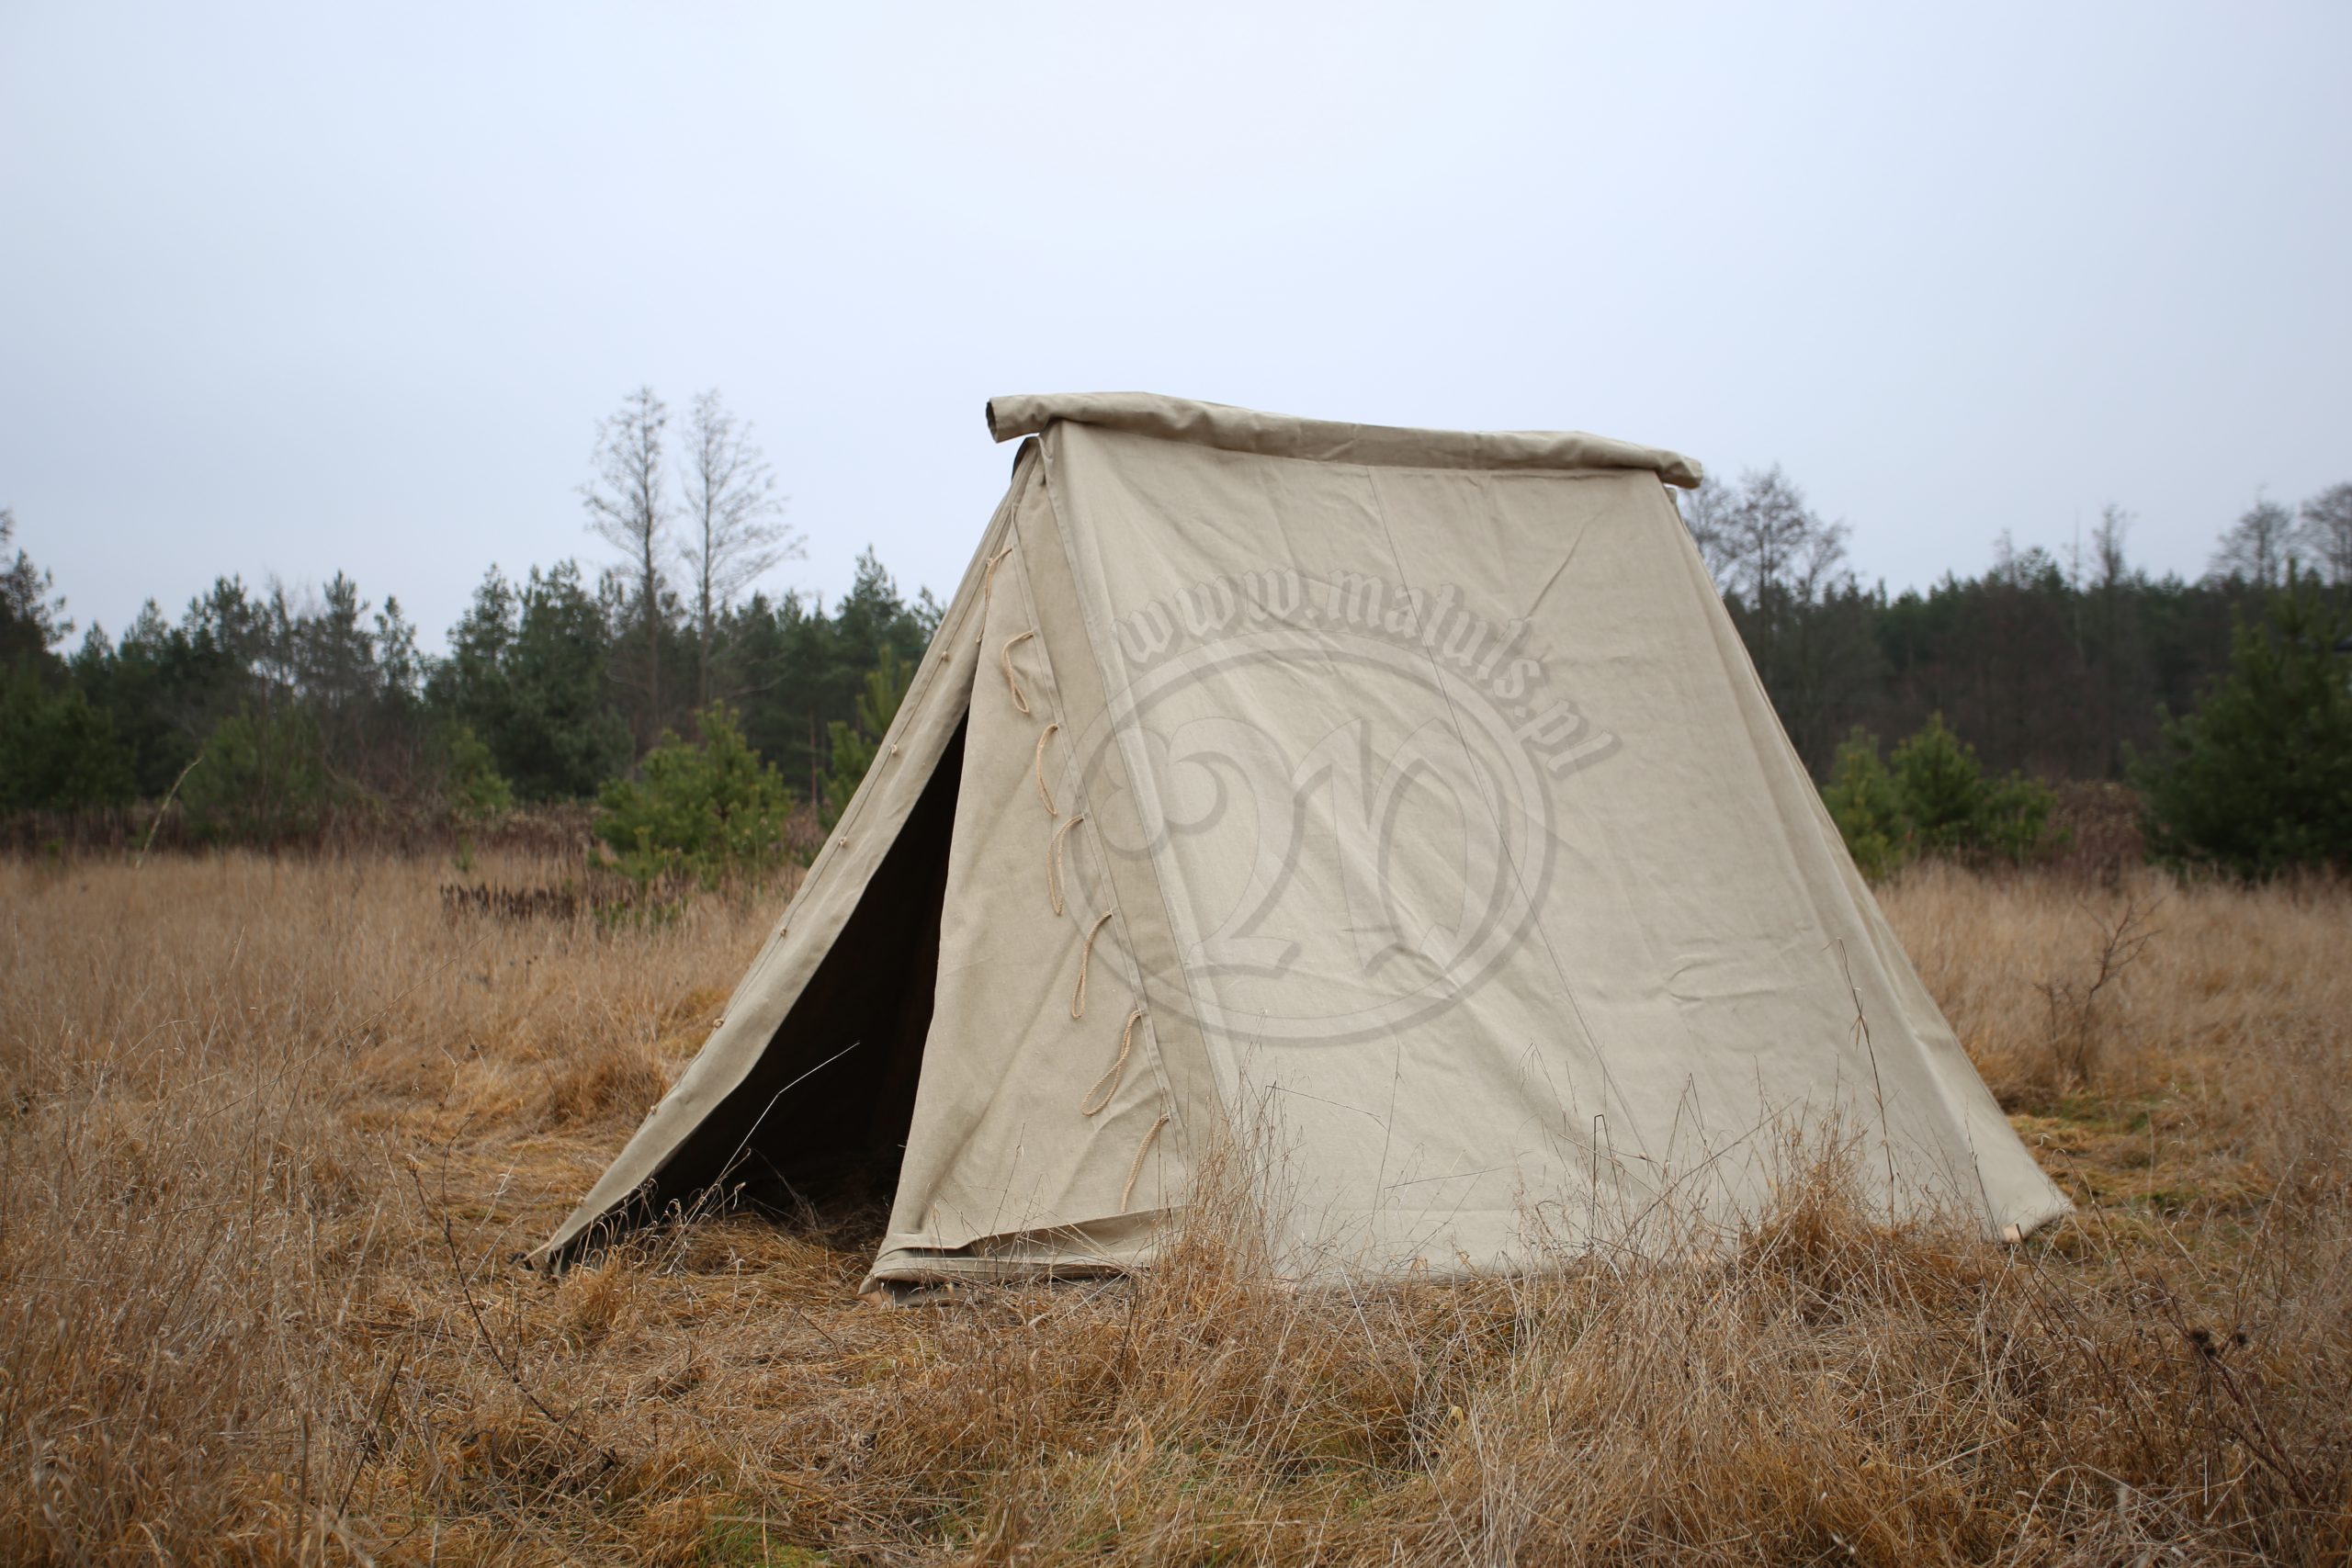 Lniany namiot typu Geteld o wymiarach 2 m x 4 m